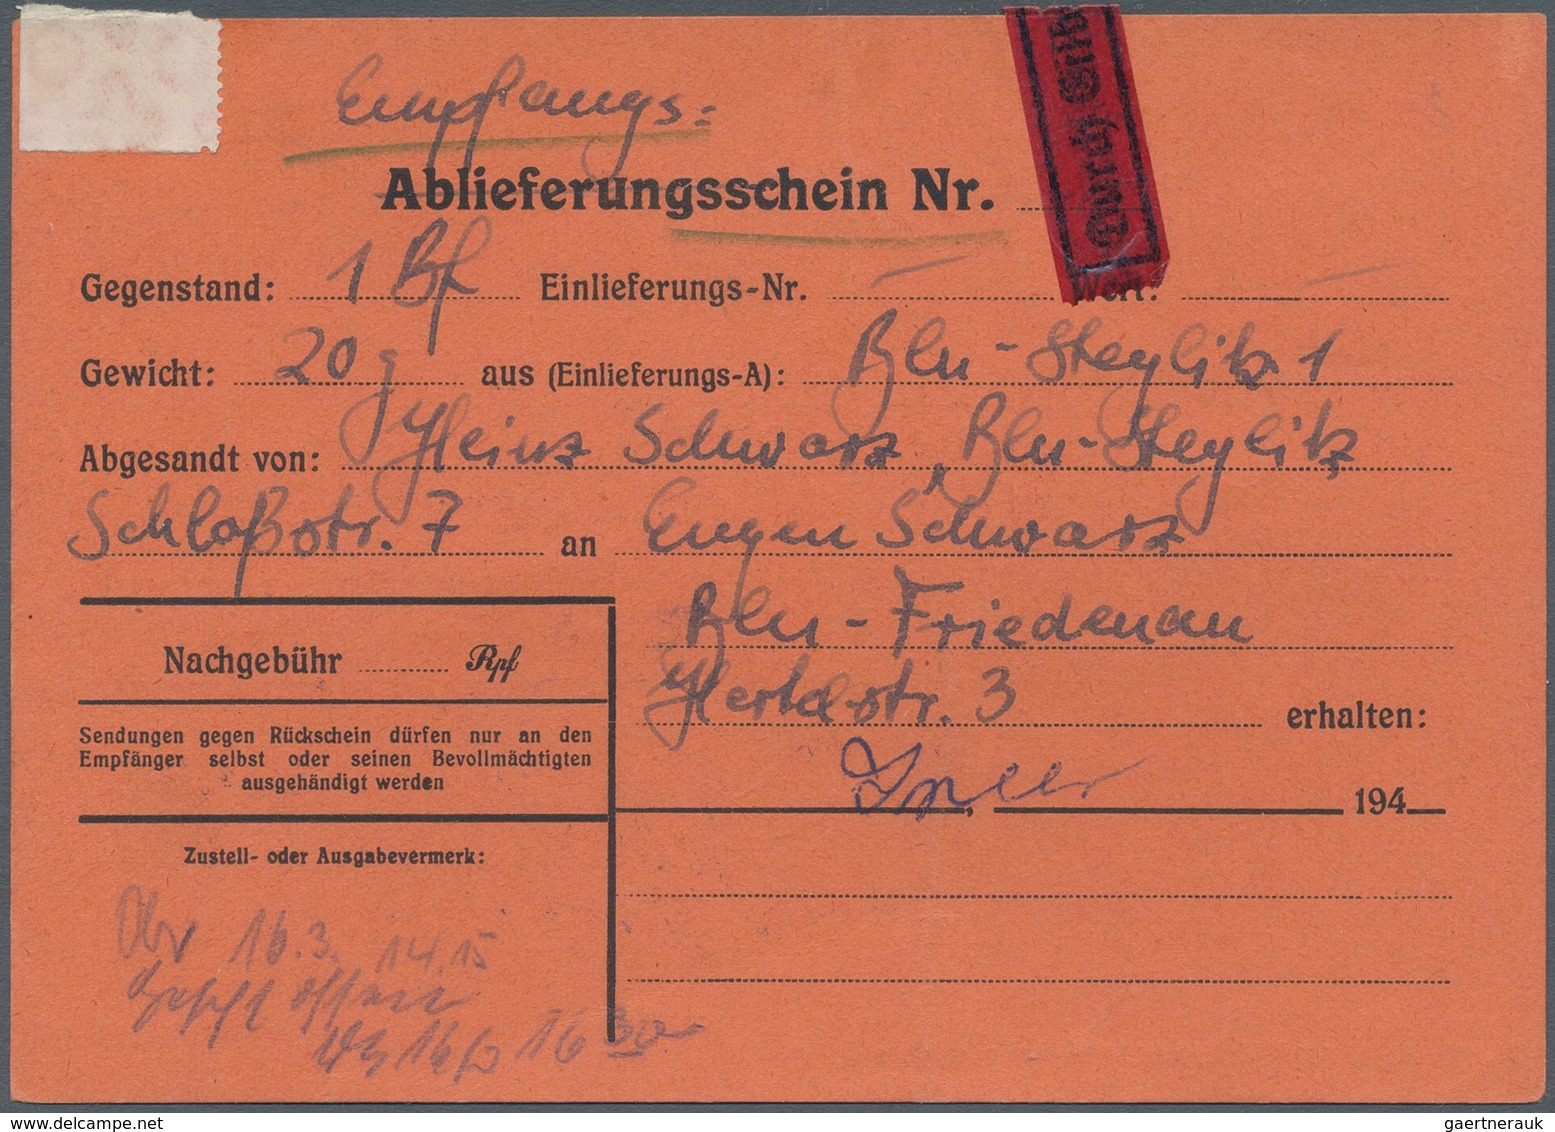 Berlin - Postschnelldienst: 5 Pf. Glocke Rechts U. Bund Angegebene Posthornwerte (vom Bogenrand) Zus - Covers & Documents